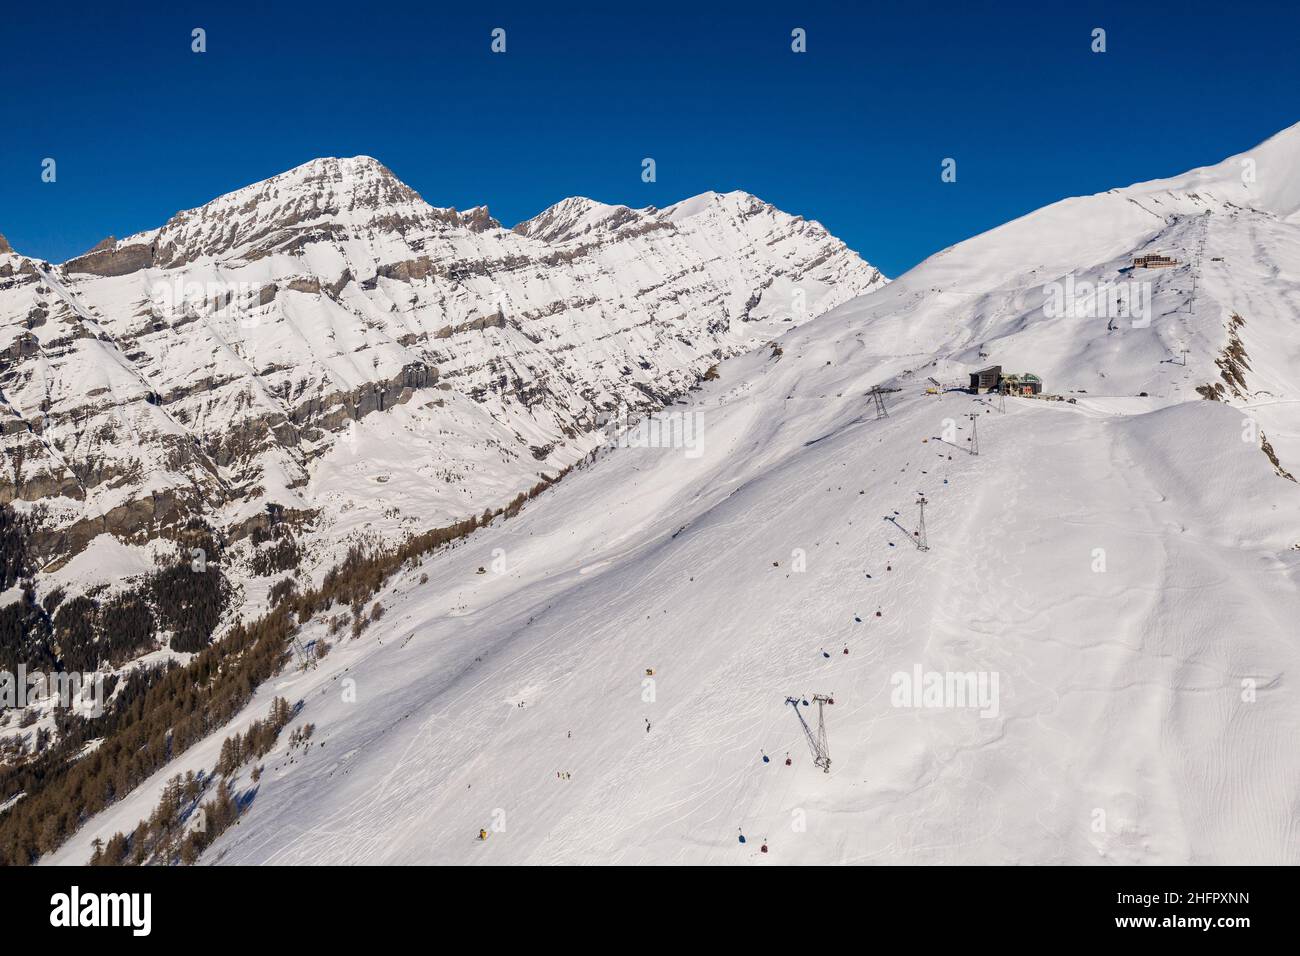 Luftaufnahme des Skigebiets Leukerbad und der Seilbahnstation in den alpen im Kanton Wallis in der Schweiz an einem sonnigen Wintertag. Stockfoto